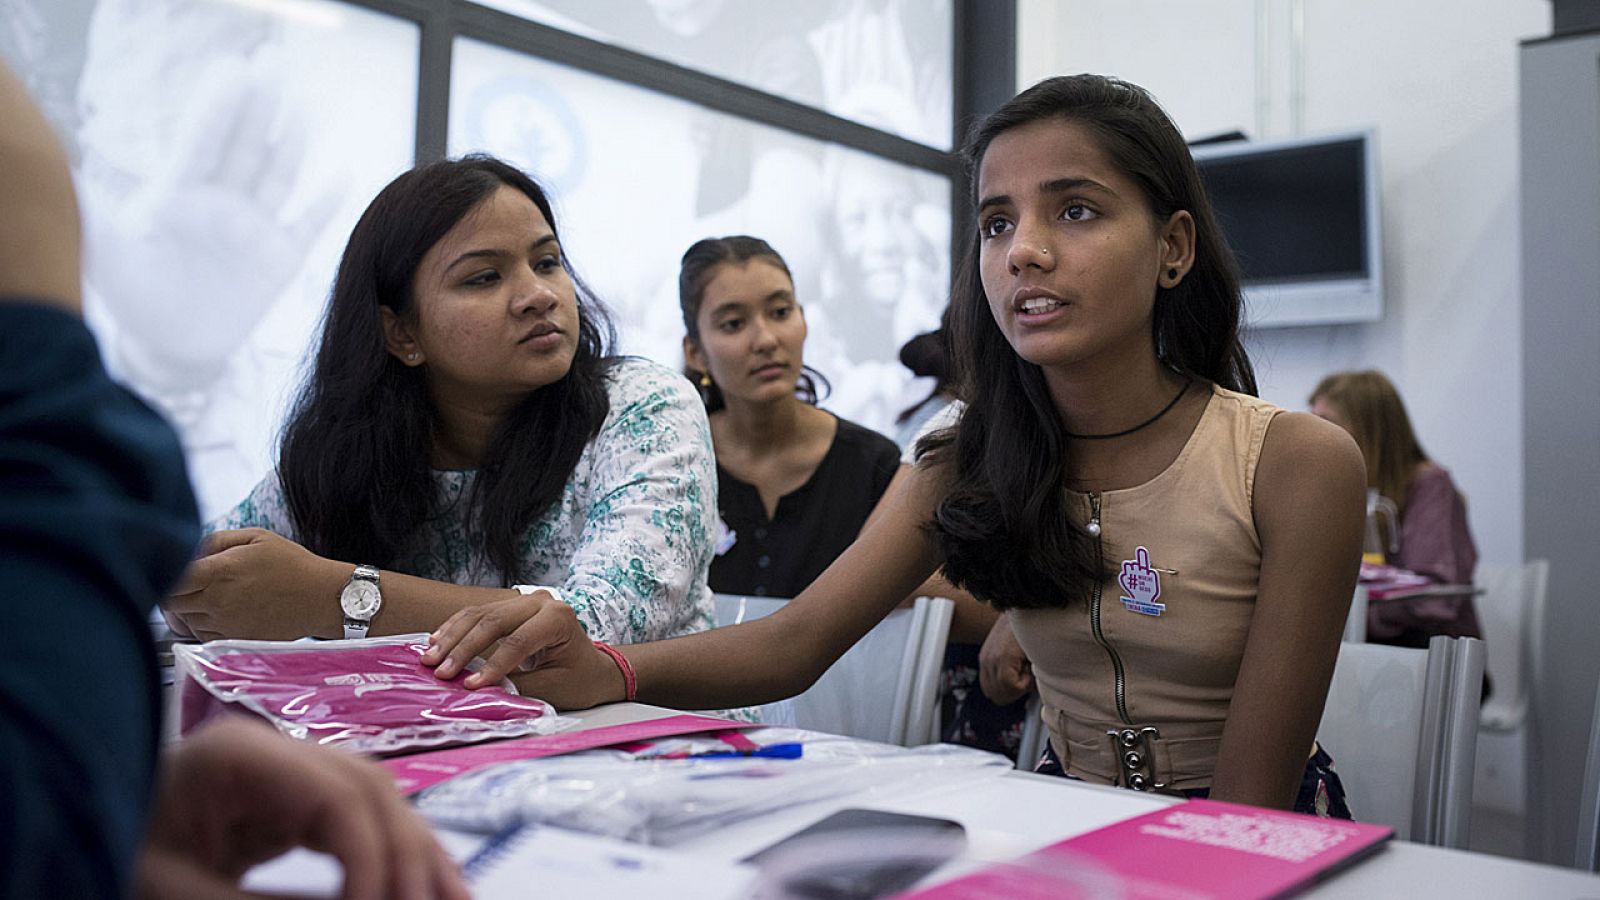 Shatabdi (derecha) y Sabina Shrestha (detrás) luchan para prevenir la violencia contra las niñas en India y Nepal.